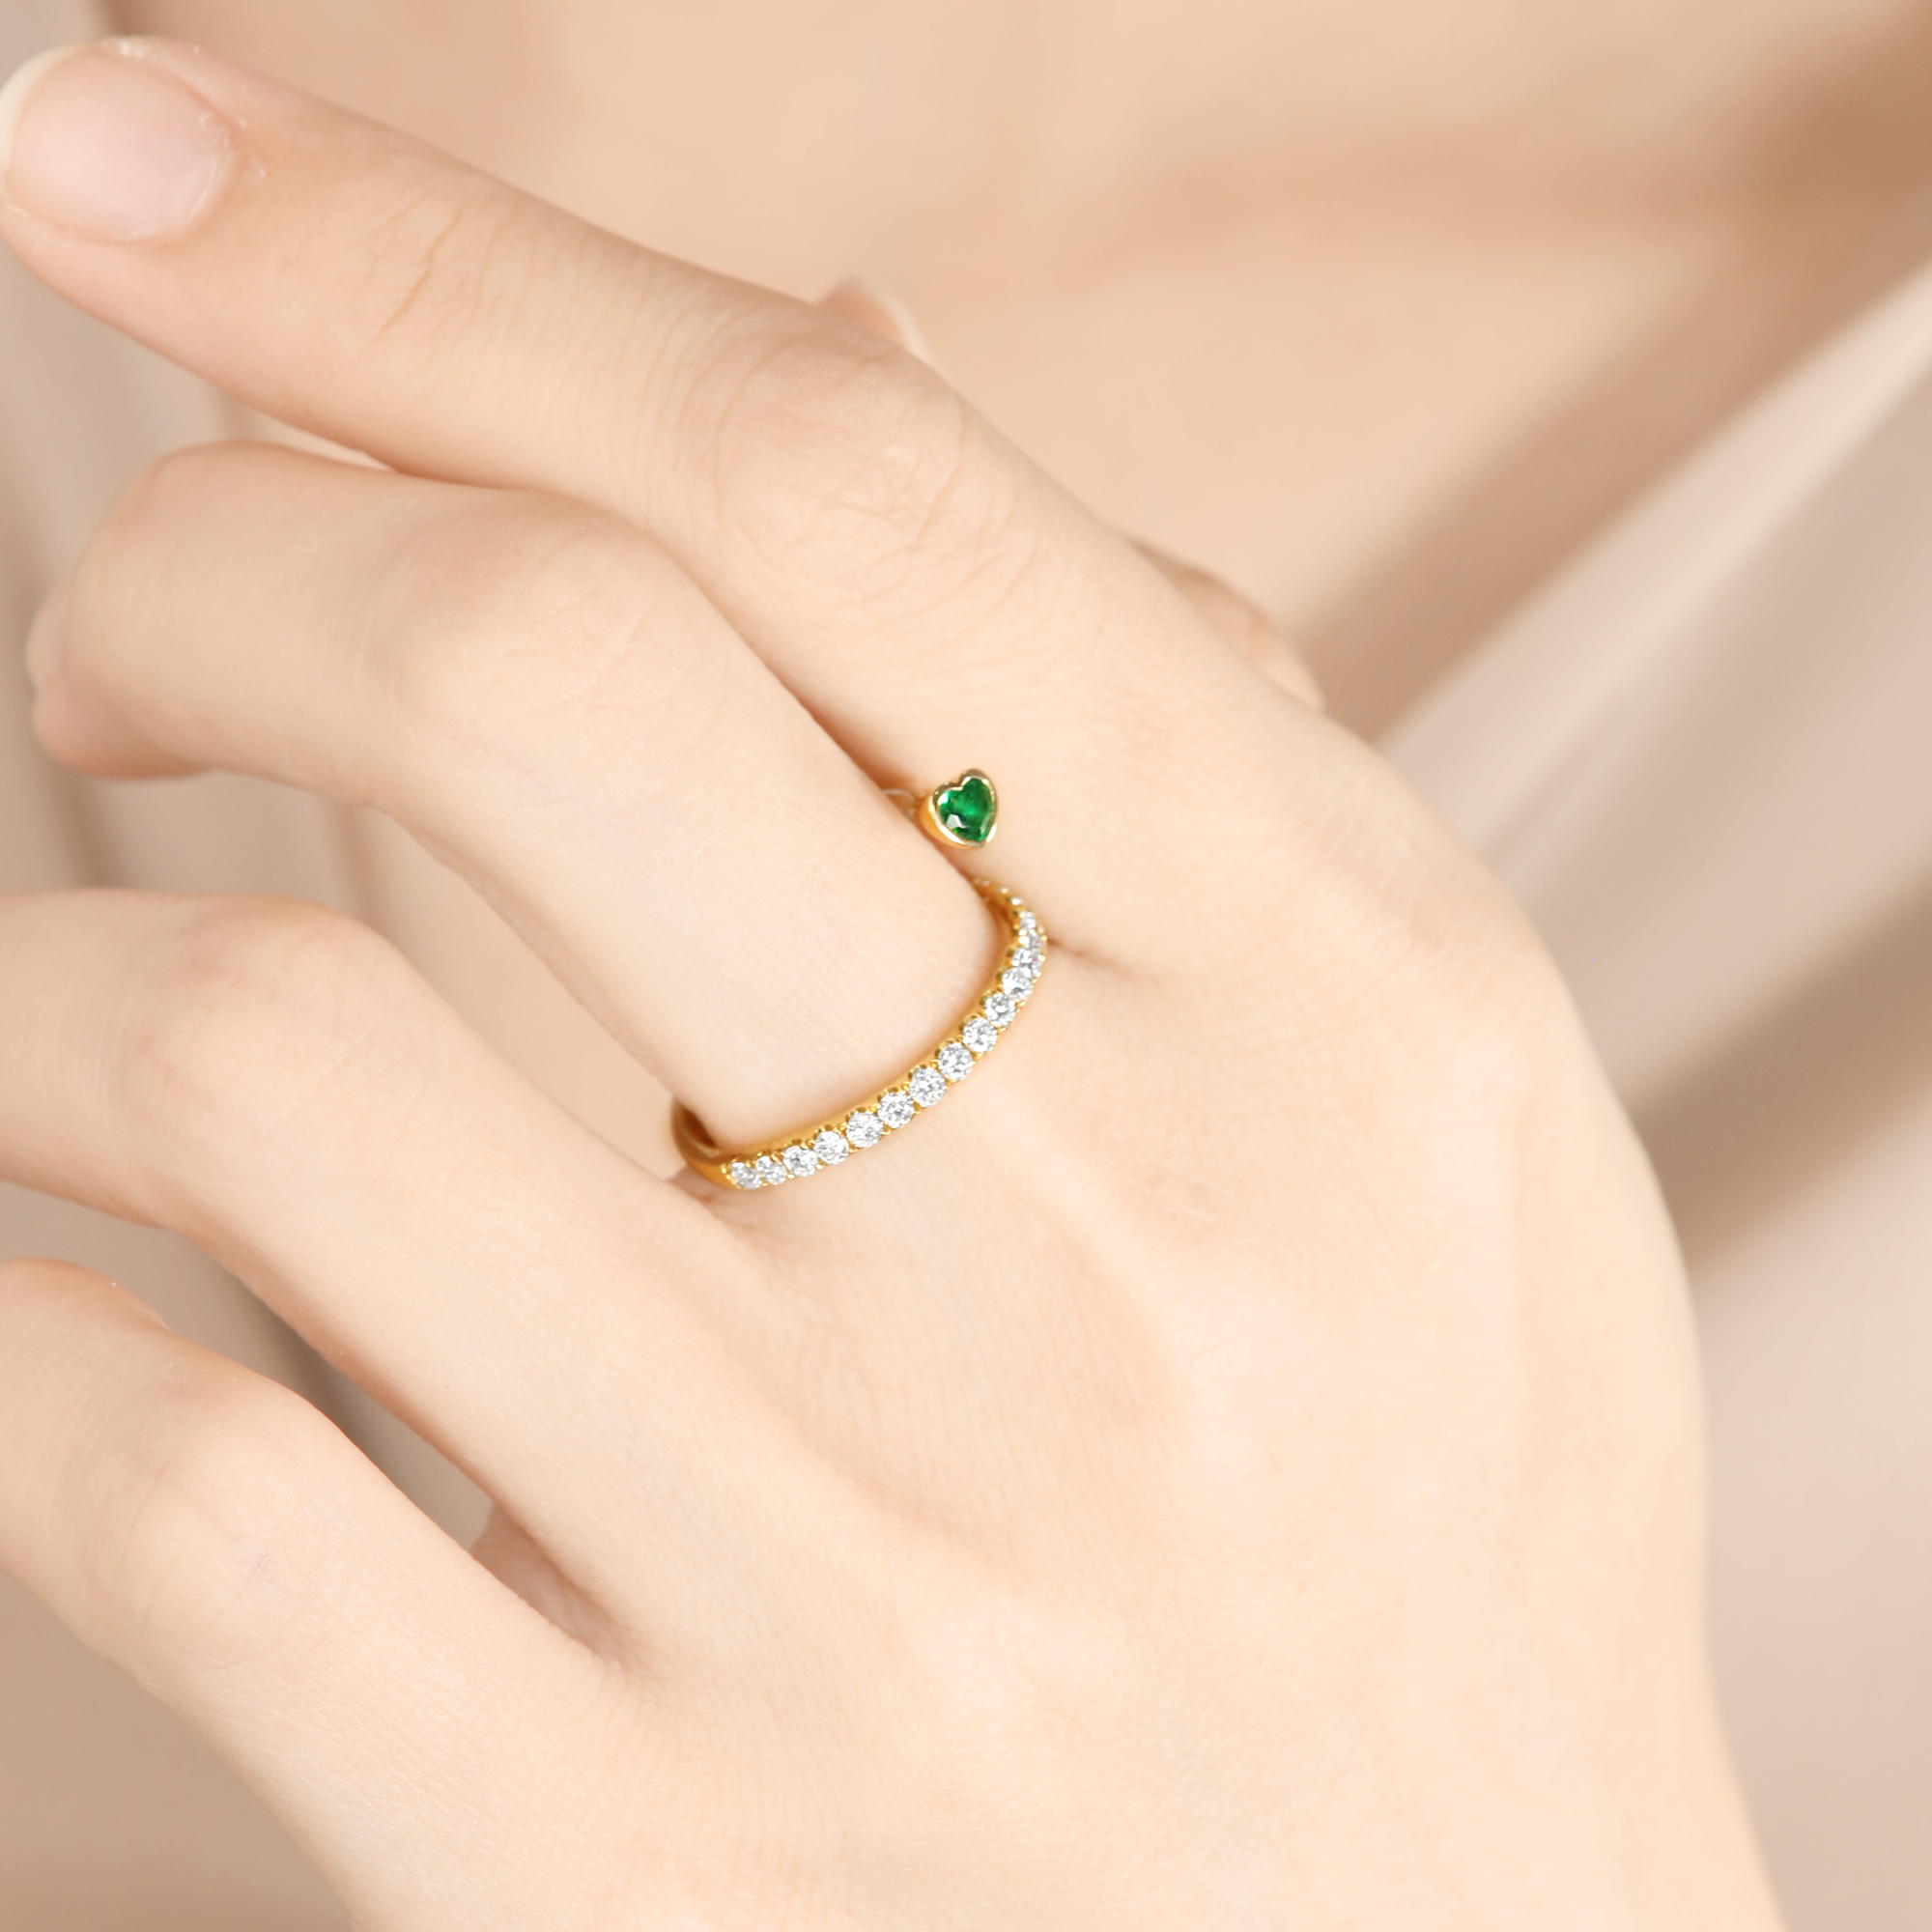 DeChuang18K金祖母绿戒指浪漫心形灵动指尖可爱设计师款 潮流珠宝